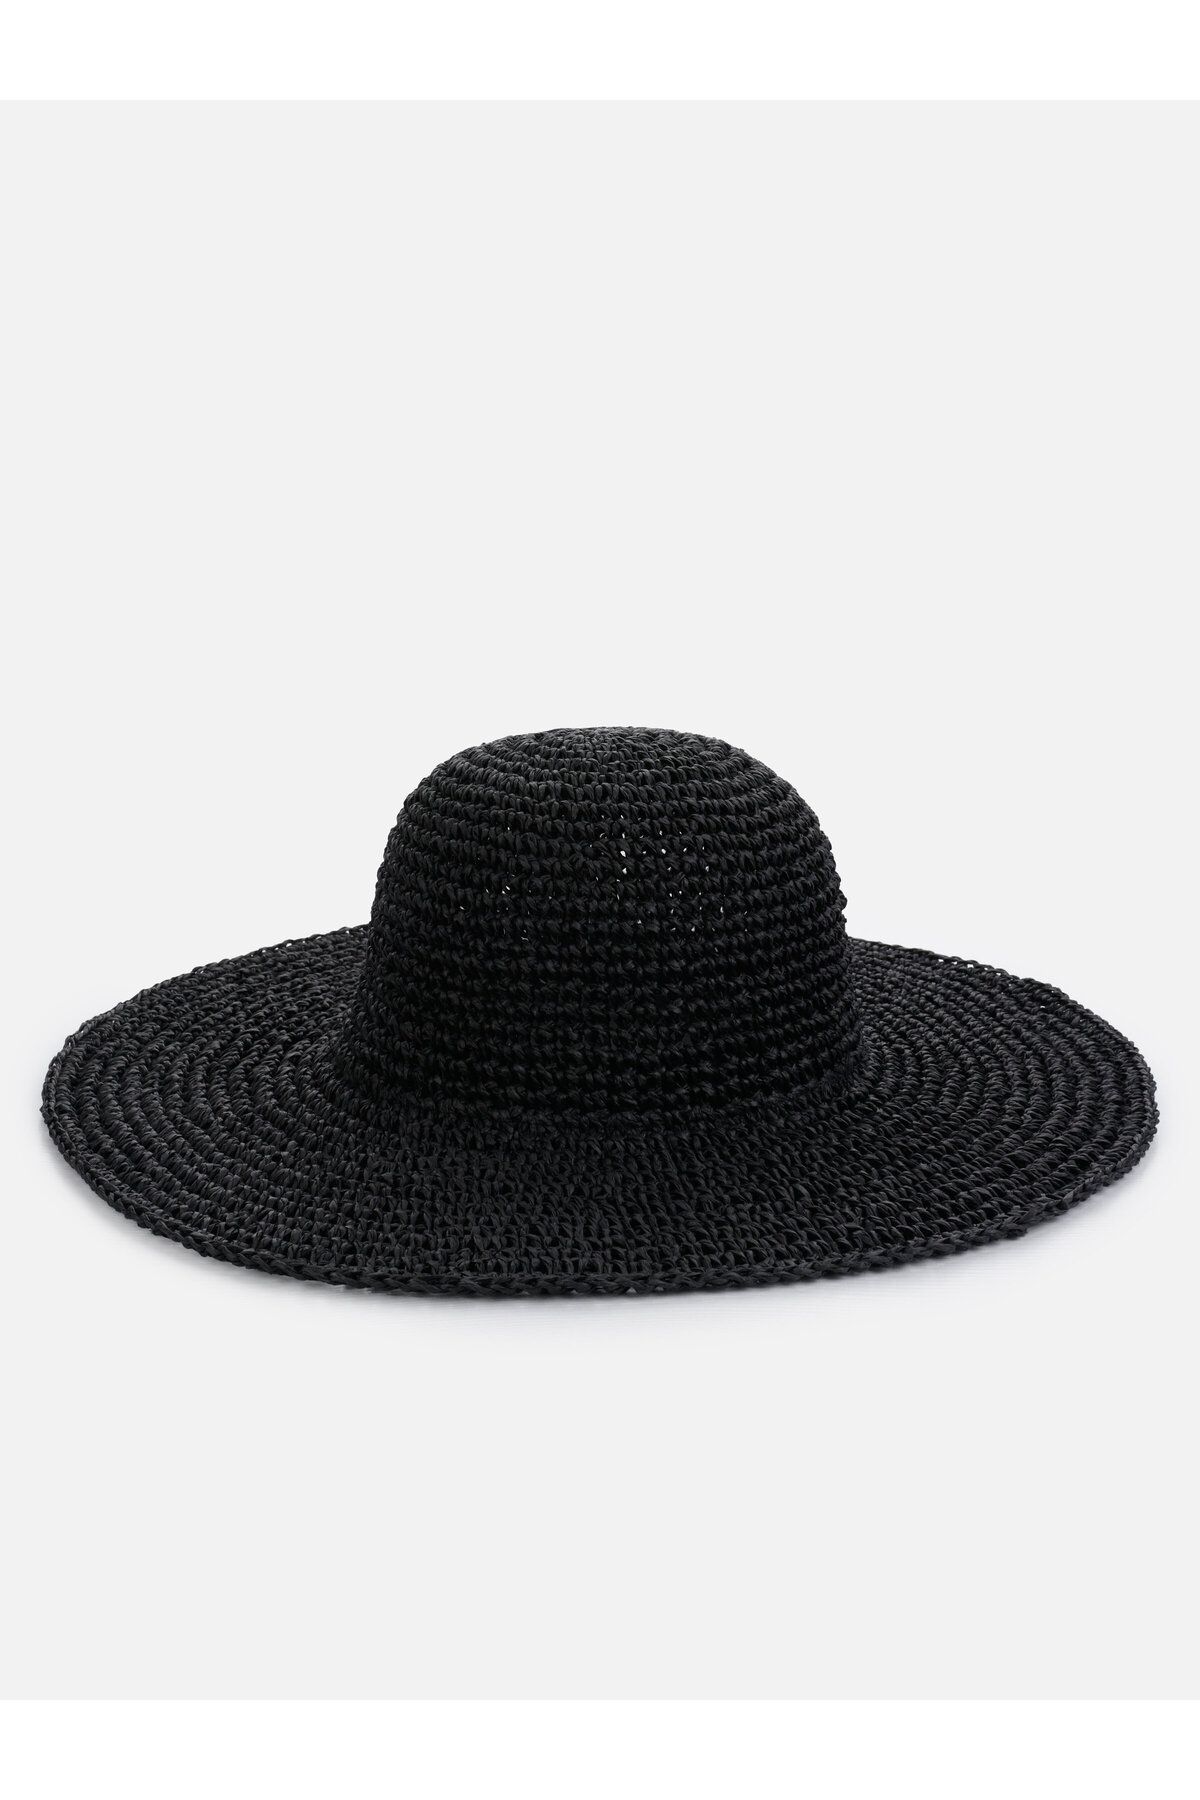 Colin’s Siyah Kadın Şapka